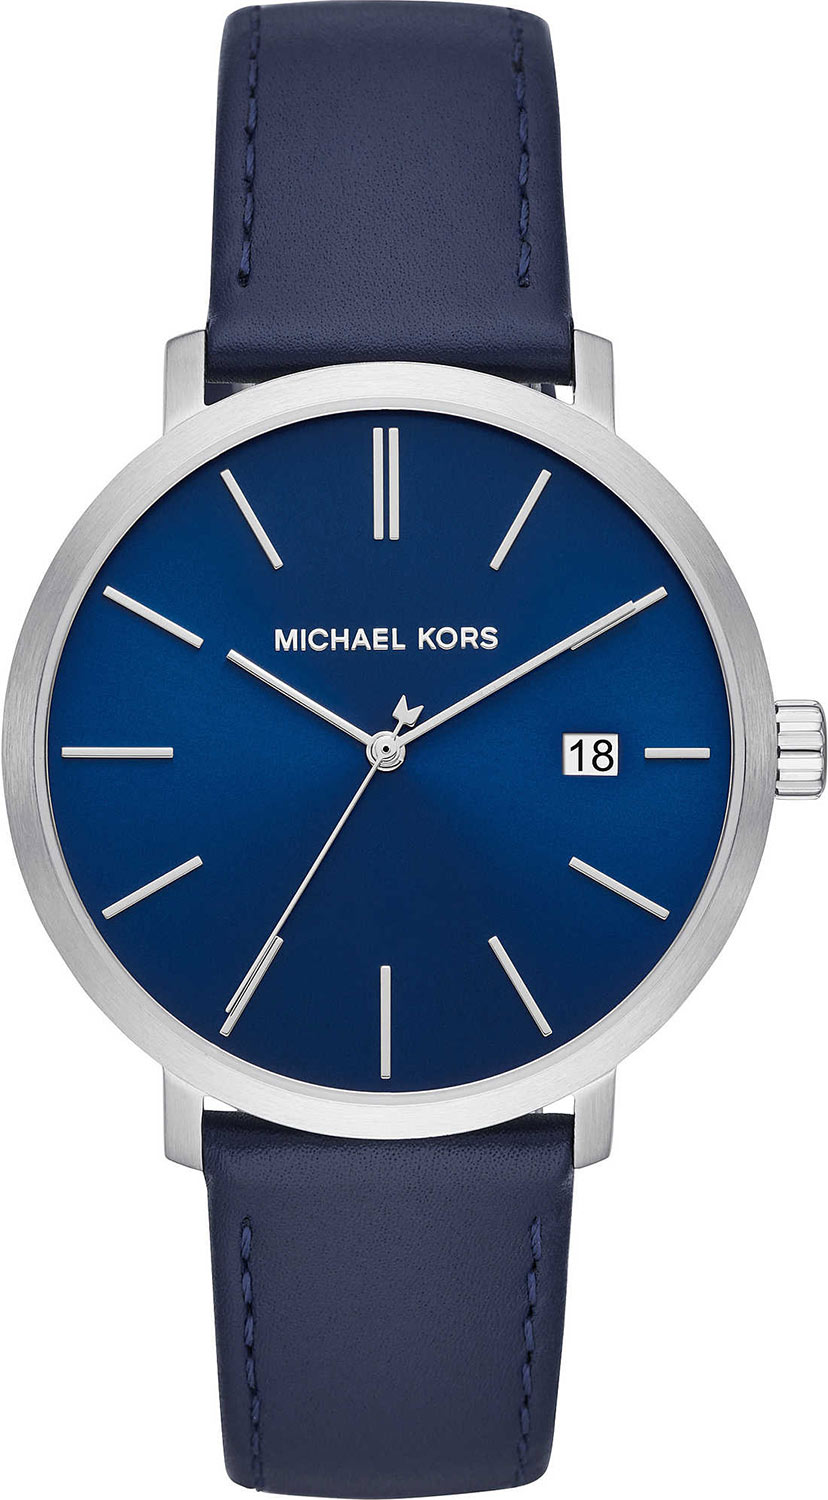 Наручные часы Michael Kors MK8675